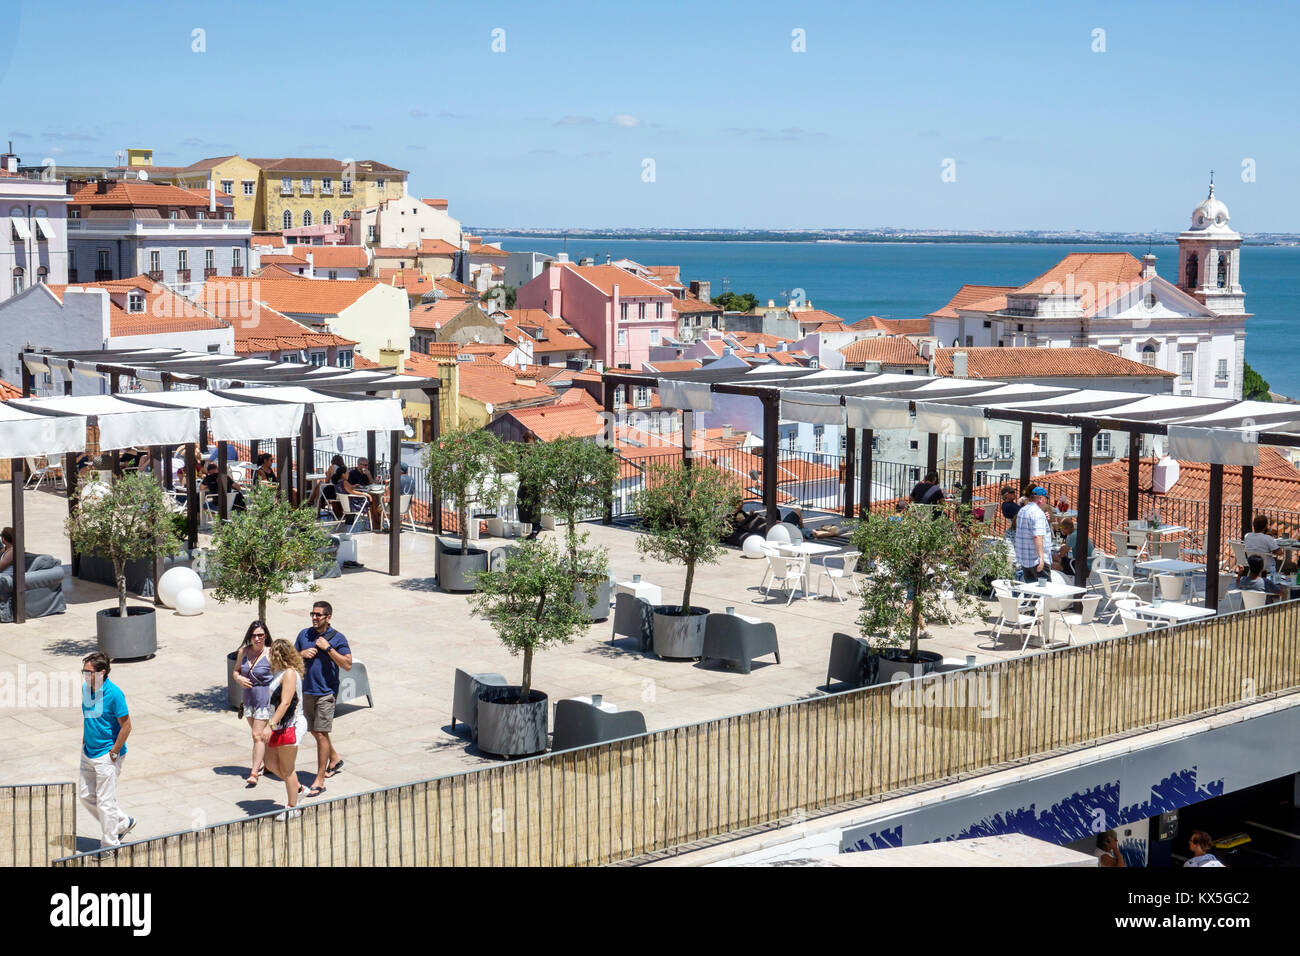 Lisbonne Portugal,Tage,Alfama,quartier historique,Miradouro das Portas do sol,terrasse,vue,horizon,toits,résidences,ap Banque D'Images